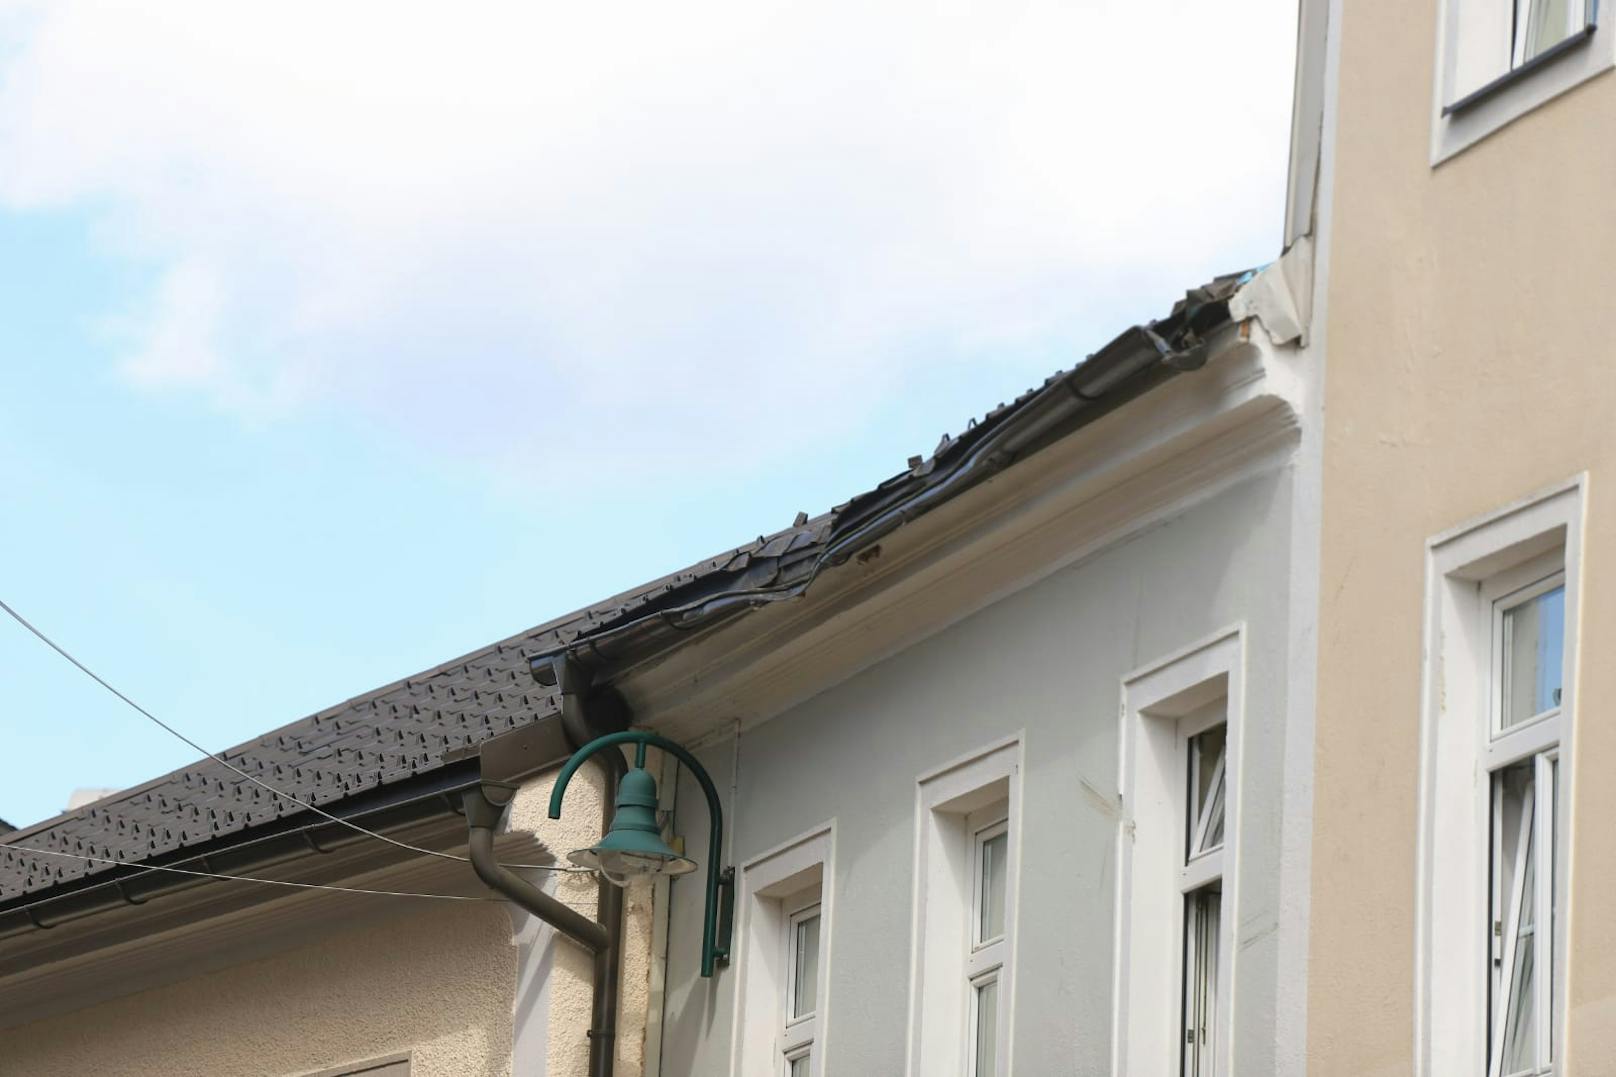 DIe Dachrinne und Teile des benachbarten Rathauses wurden beschädigt.